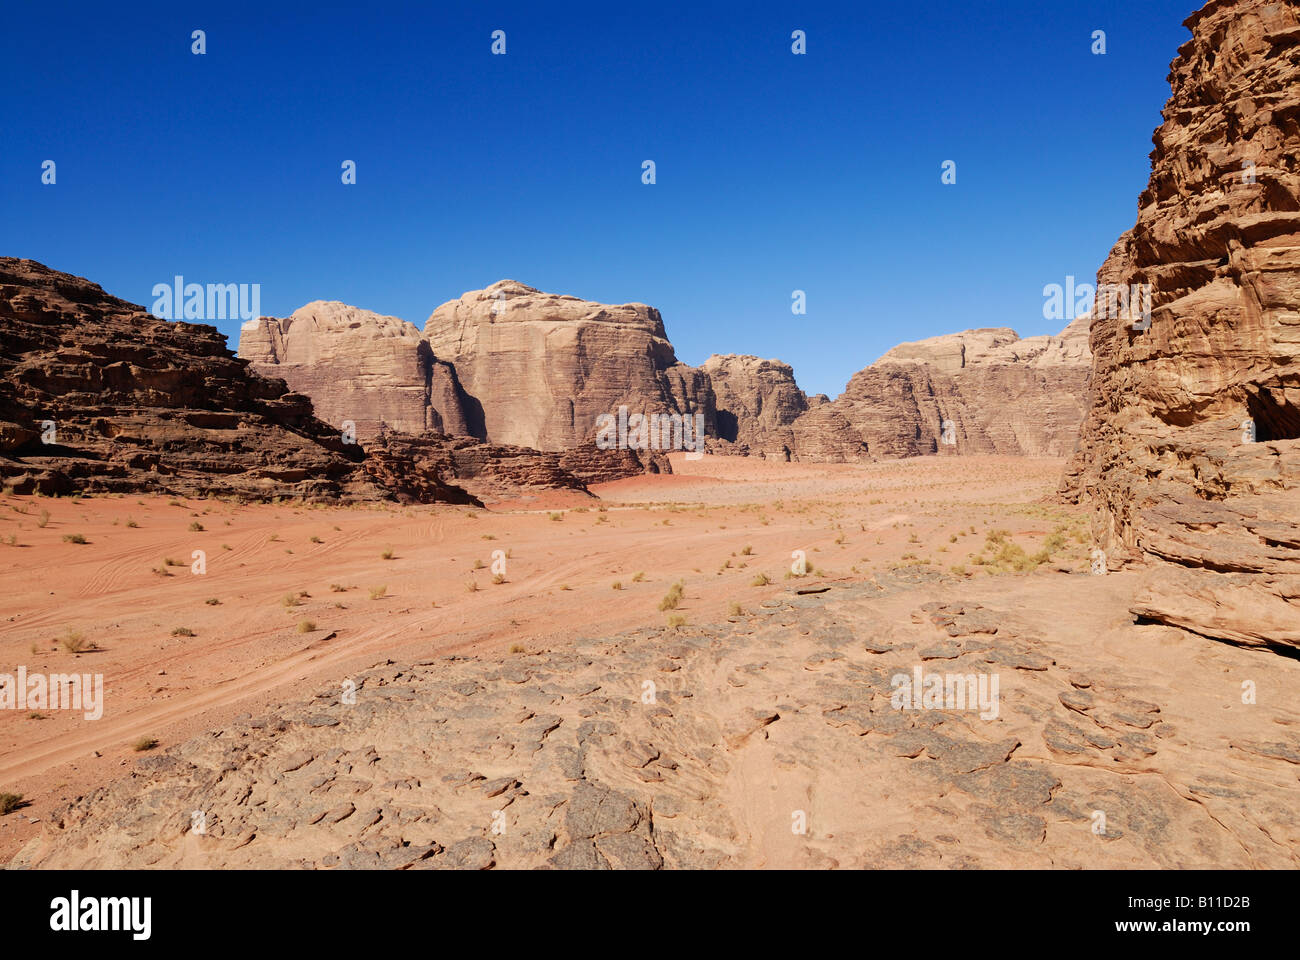 desert of Wadi Rum in Jordan, Arabia Stock Photo